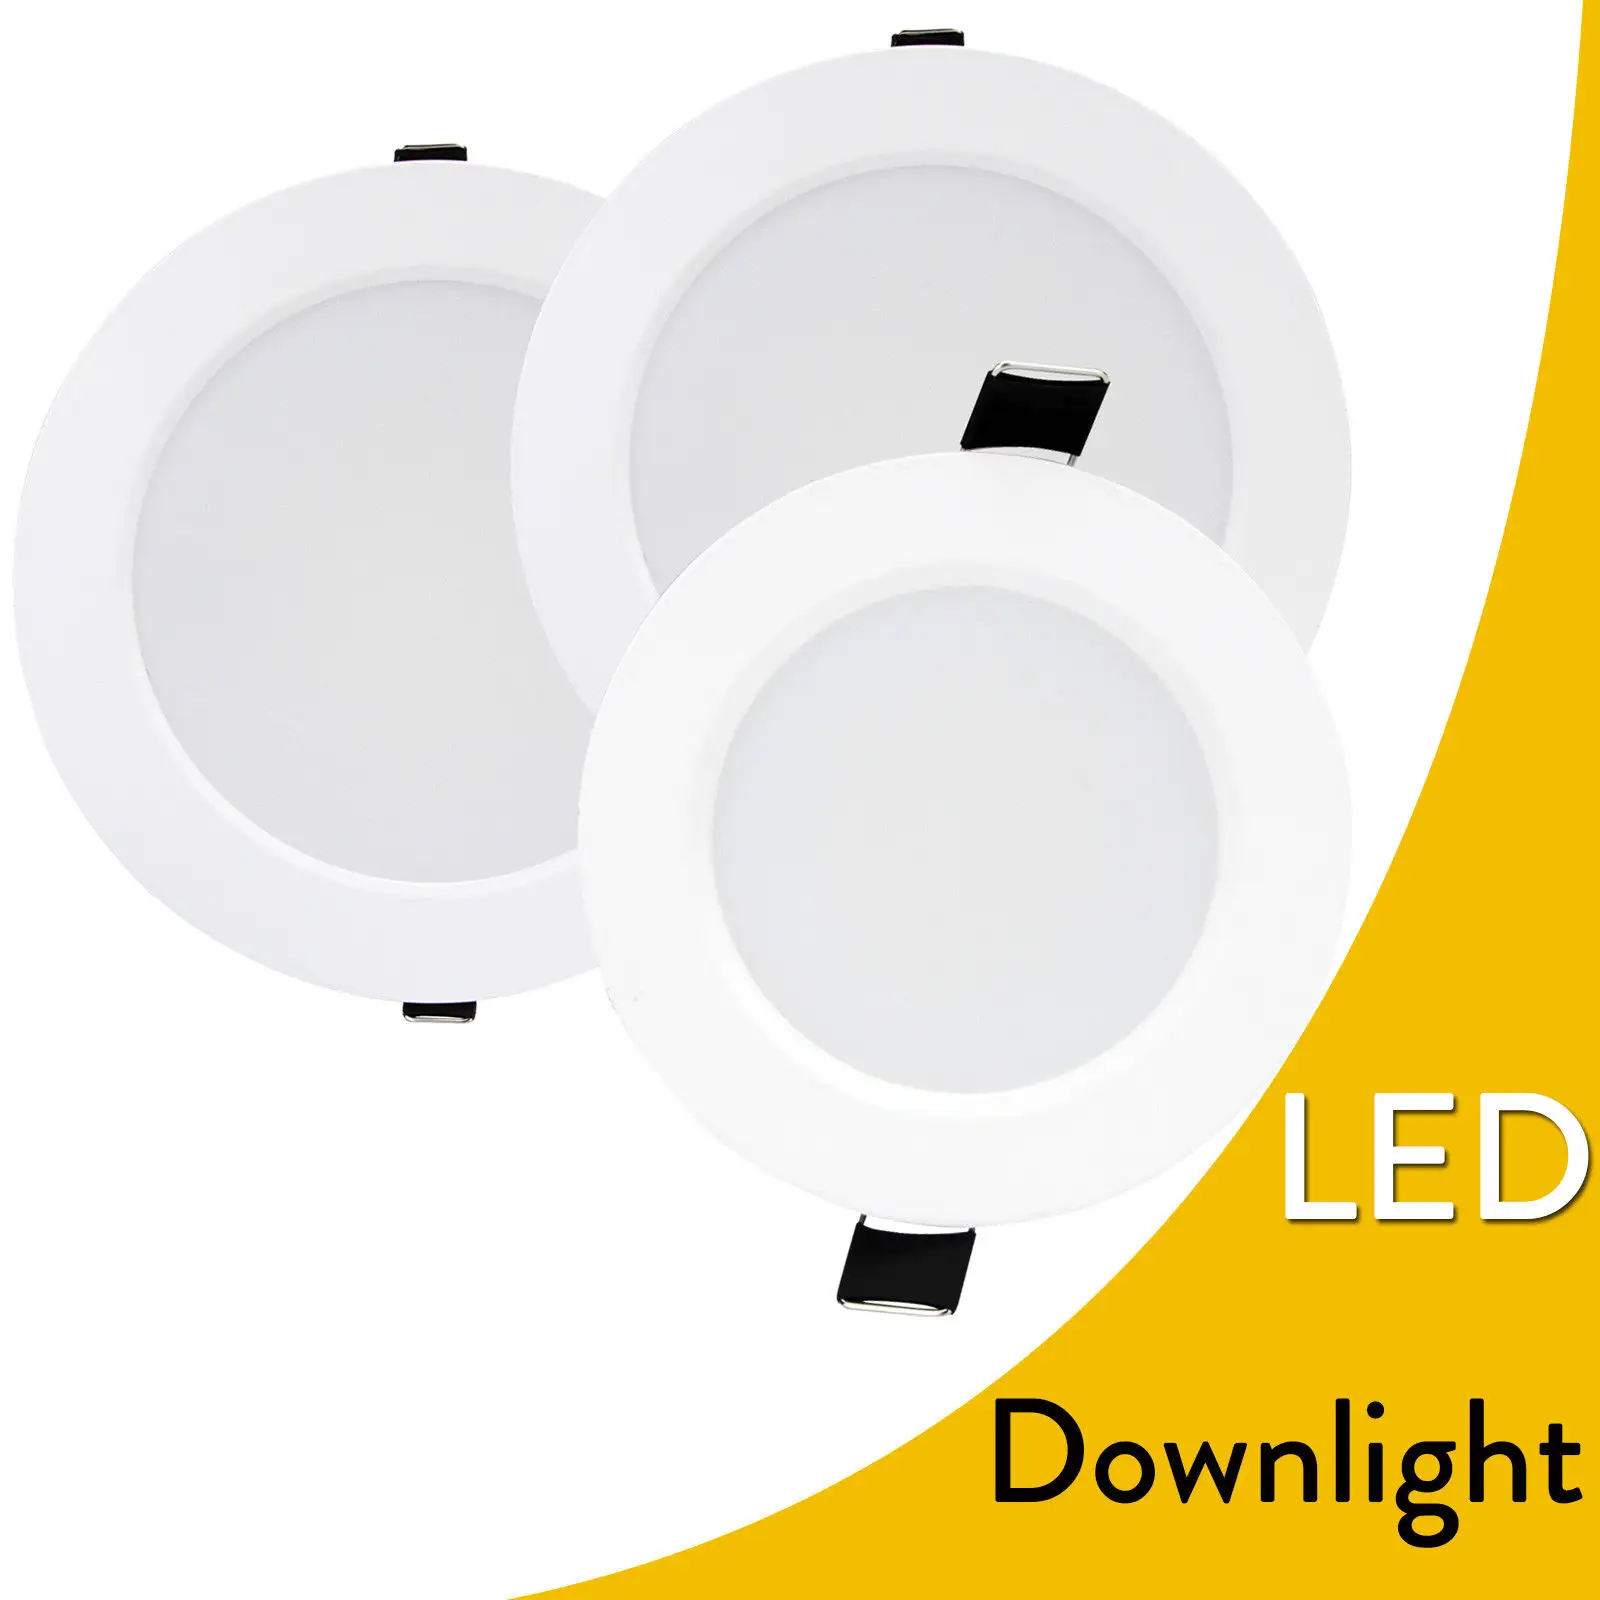 Dim 6W 9W 12W 18W 24W LED gömme tavan ışığı fikstürü lamba 110V 220V iç mekan aydınlatması için